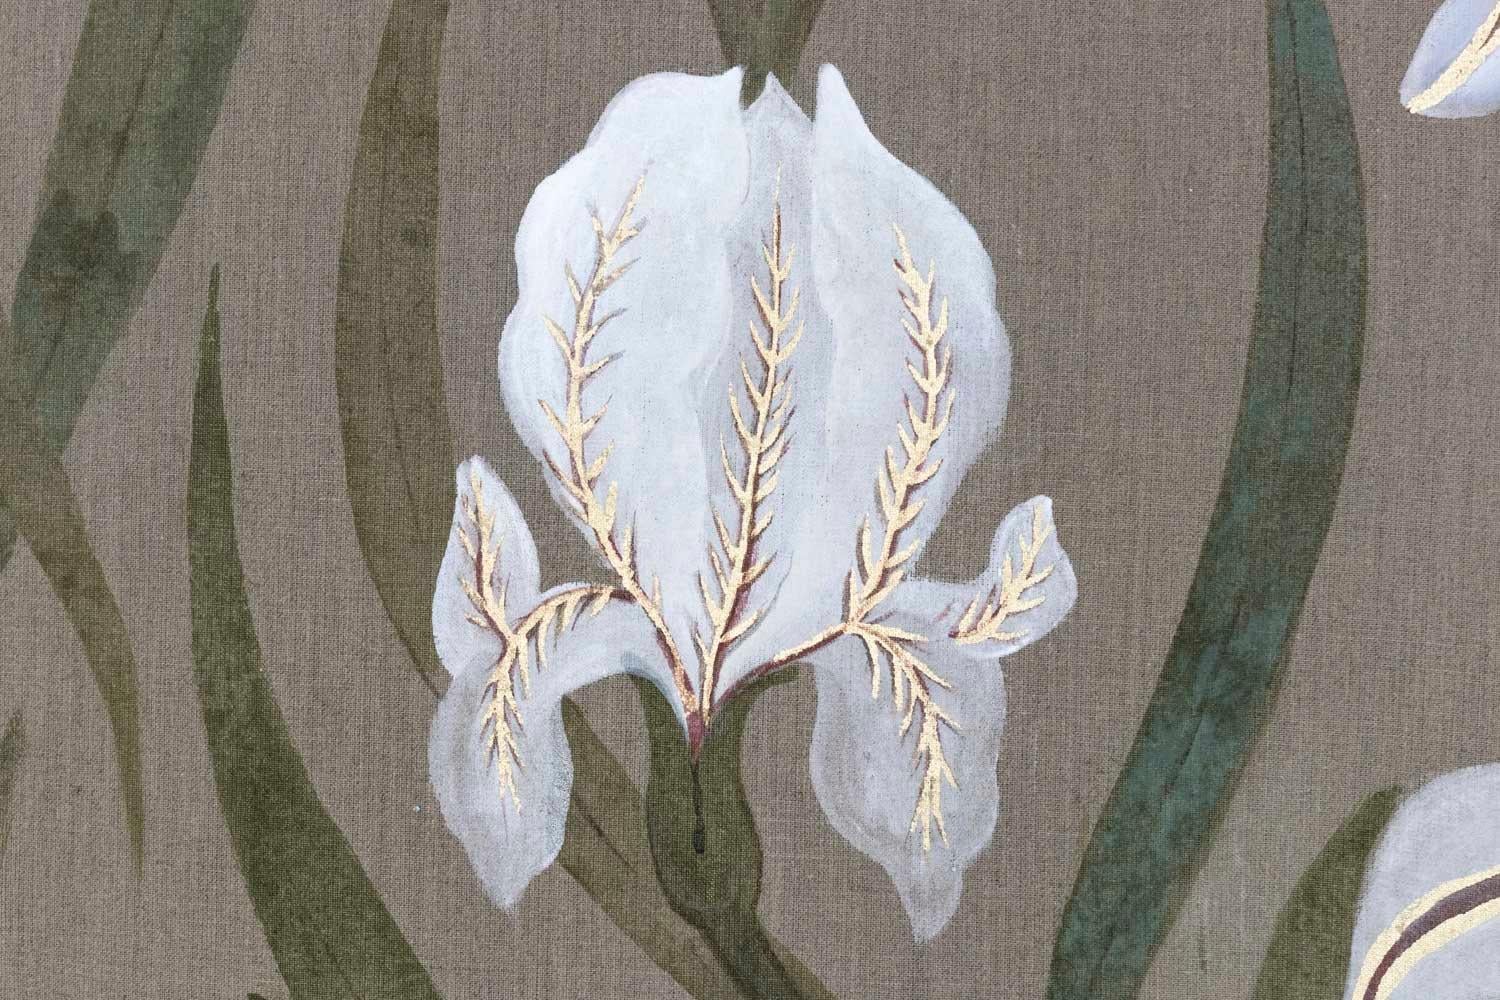 Toile peinte représentant deux singes, un oiseau et une libellule sur des feuilles et des fleurs d'iris blanc, avec des reflets dorés. L'arrière-plan montre le lin brut.

Toile brute de lin peinte à la main avec des pigments naturels et des motifs